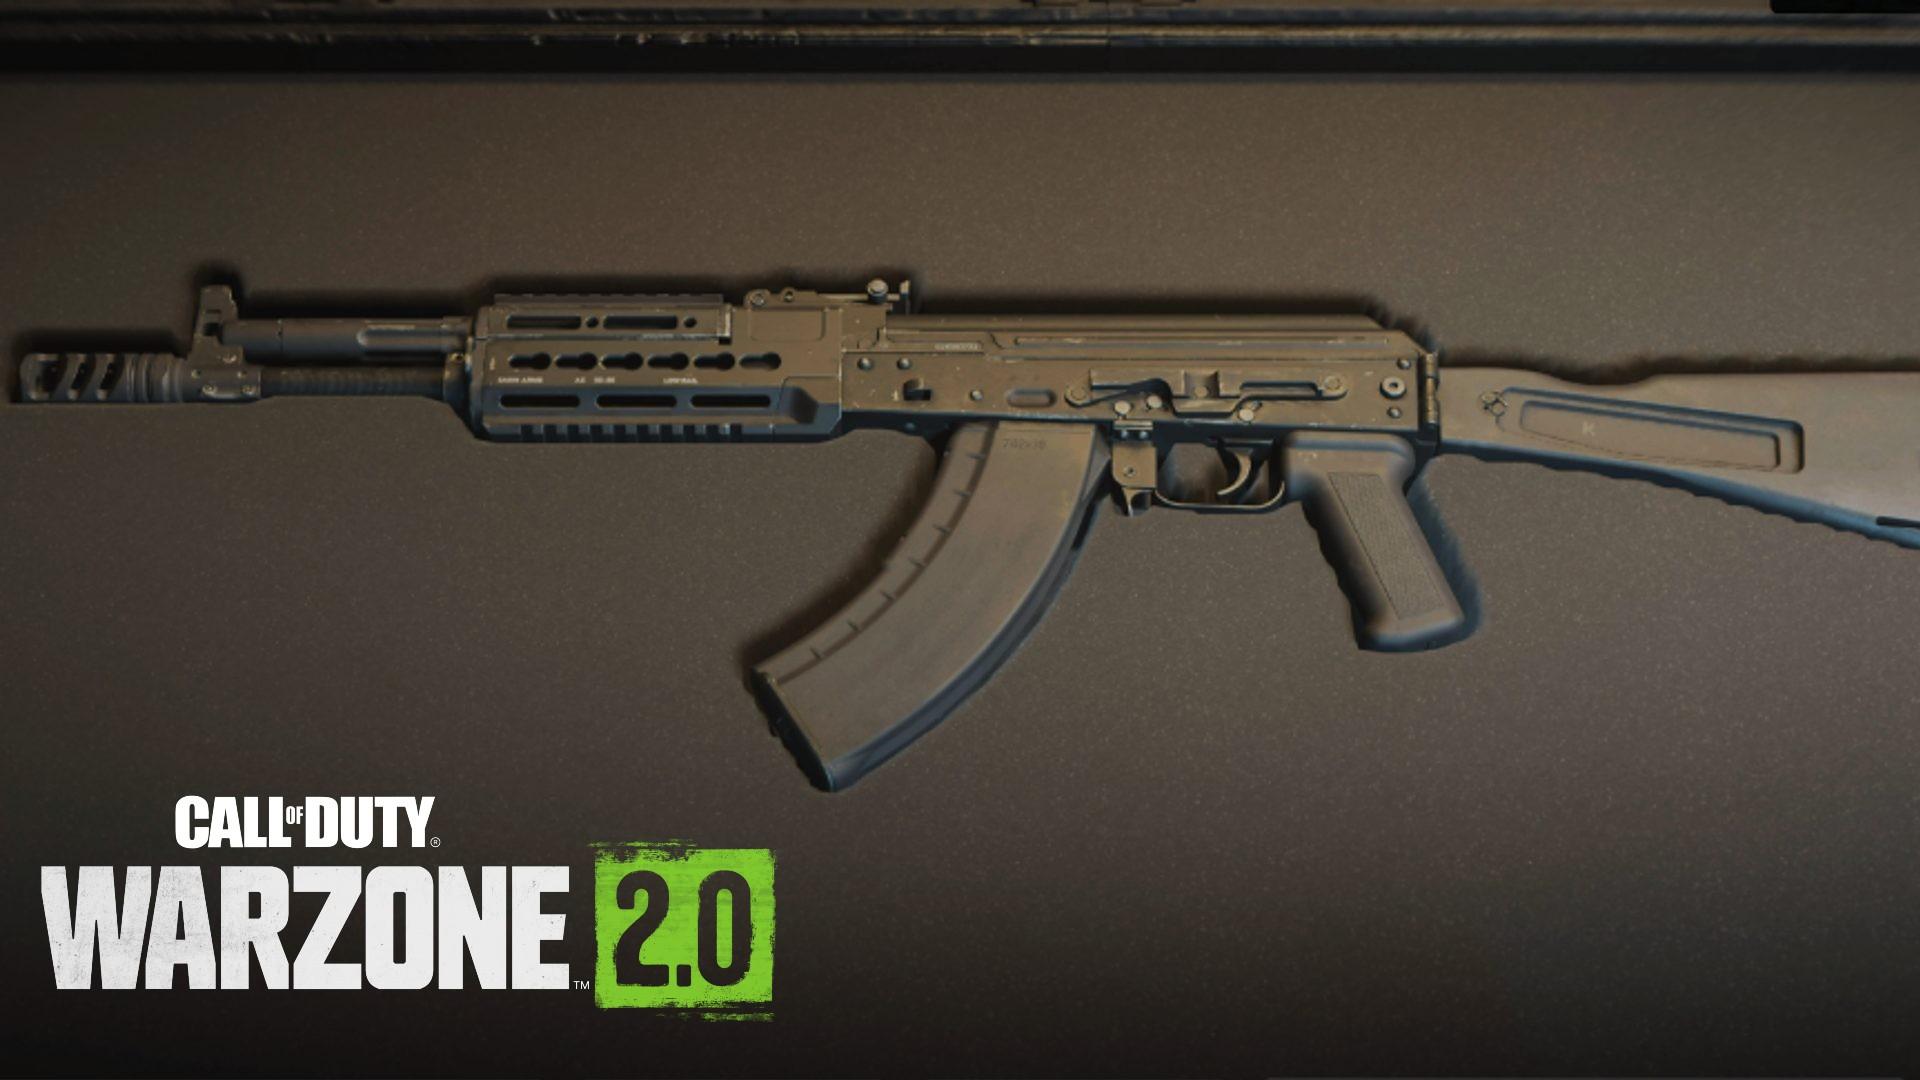 Warzone 2.0: Best guns, builds, and class setups